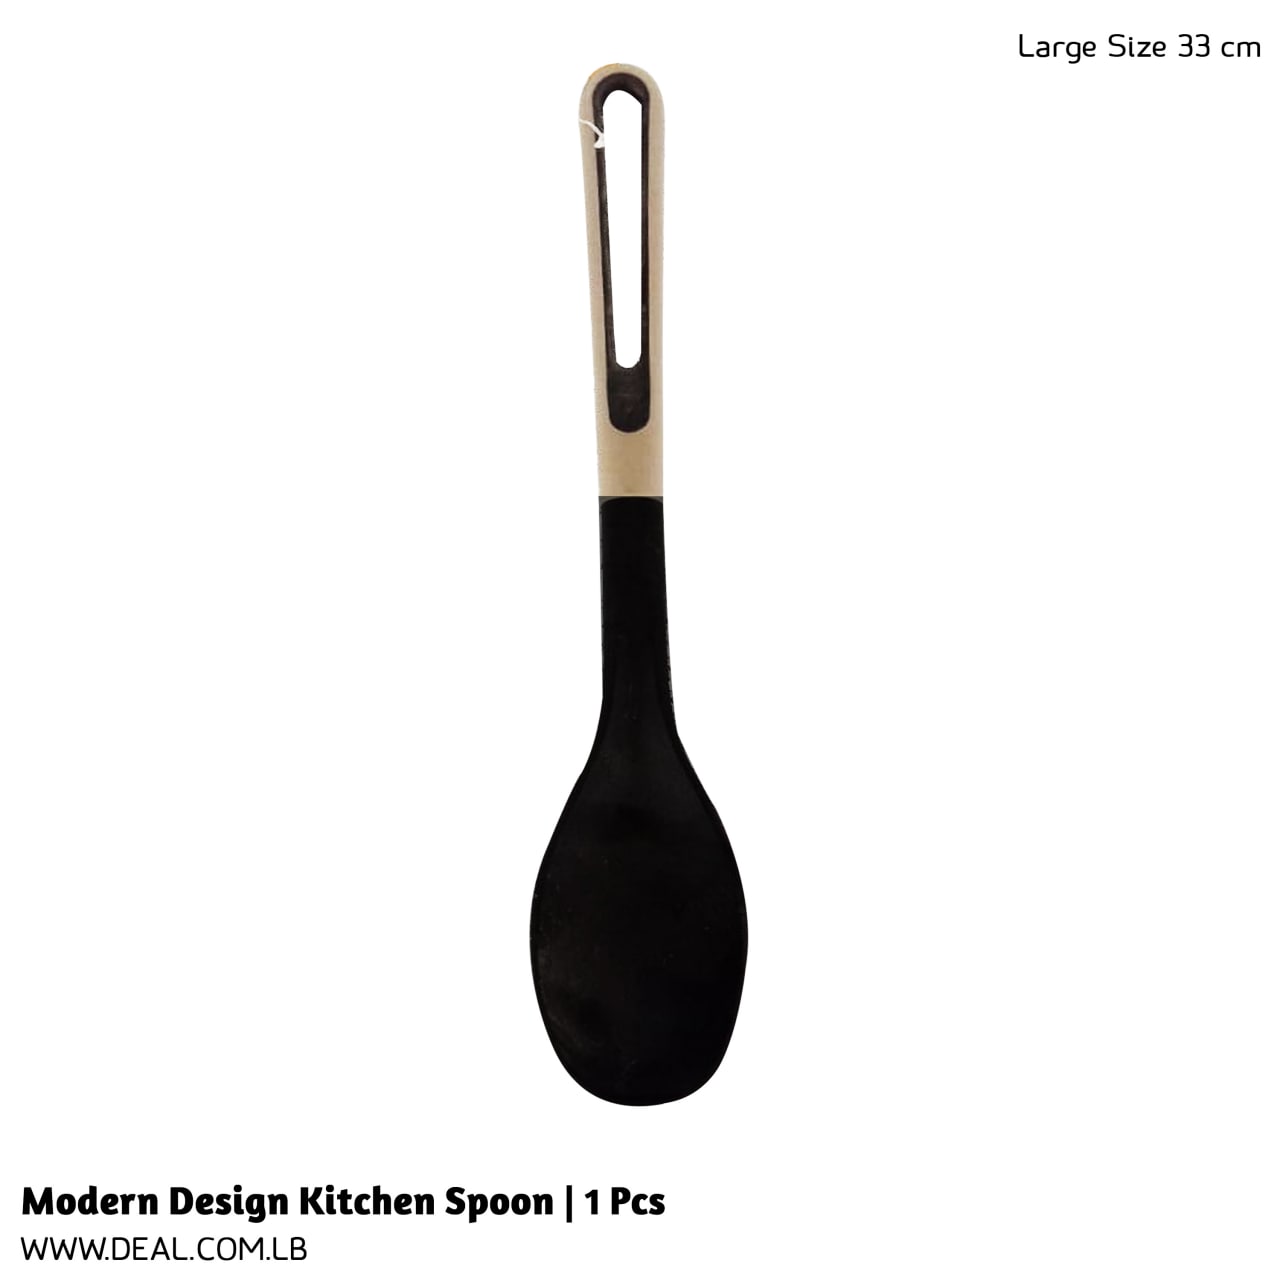 Modern Design Kitchen Spoon | 1 Pcs